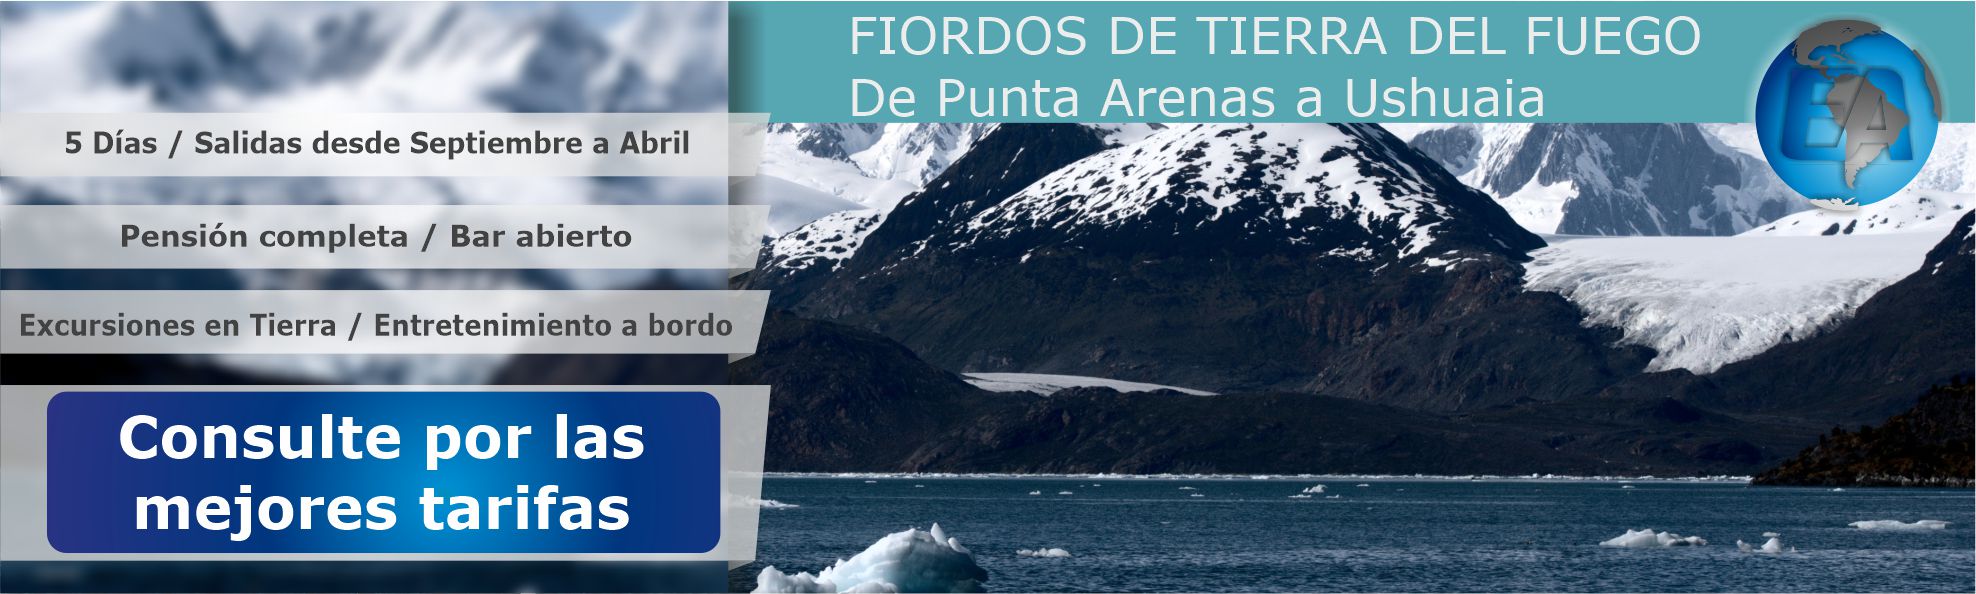 Fiordos de Tierra del Fuego, De Punta Arenas a Ushuaia